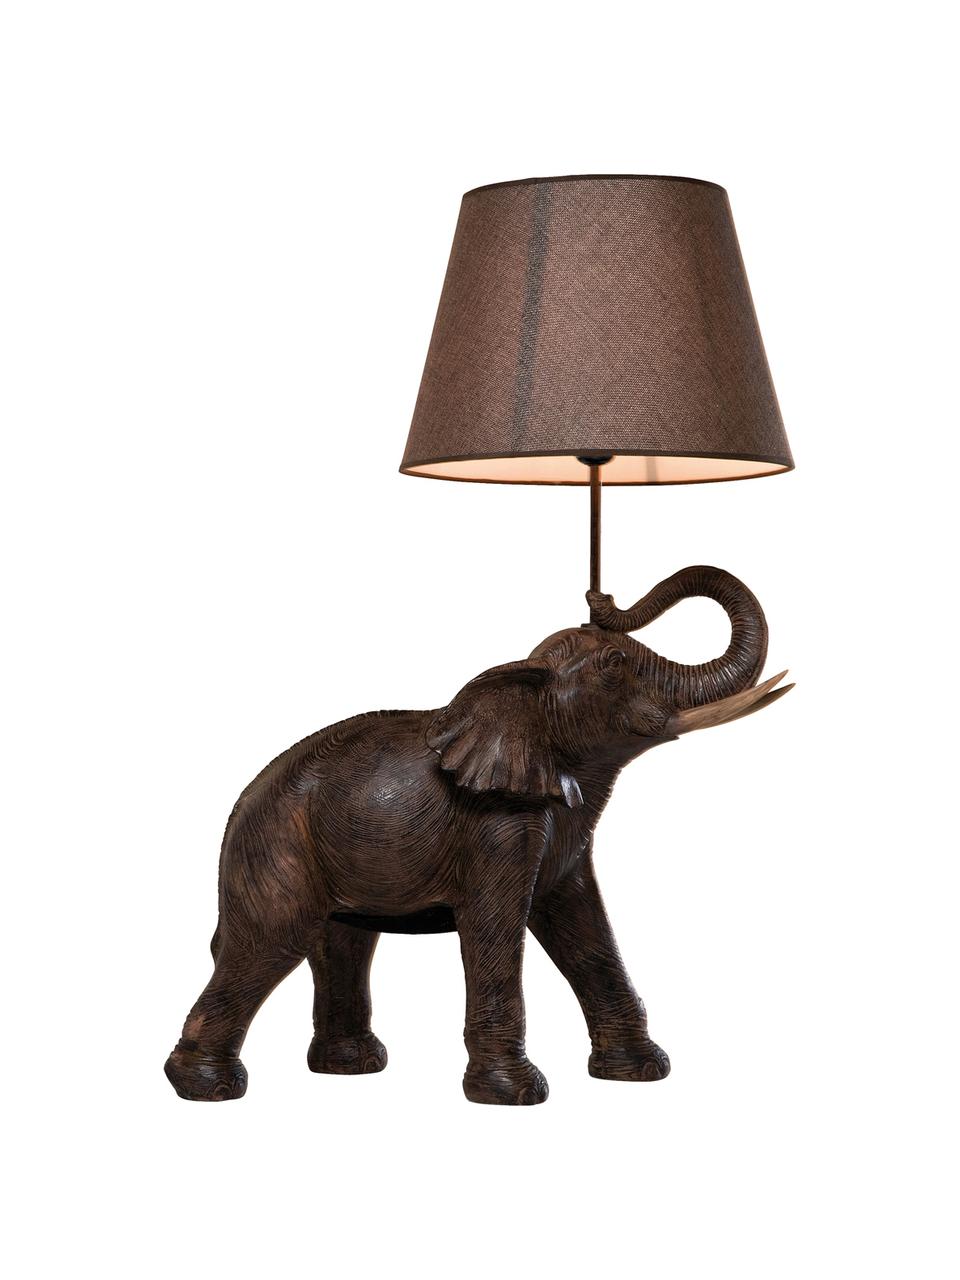 Grosse Boho-Tischlampe Elephant, Lampenschirm: Leinen, Stange: Stahl, pulverbeschichtet, Taupe, Braun, 52 x 74 cm